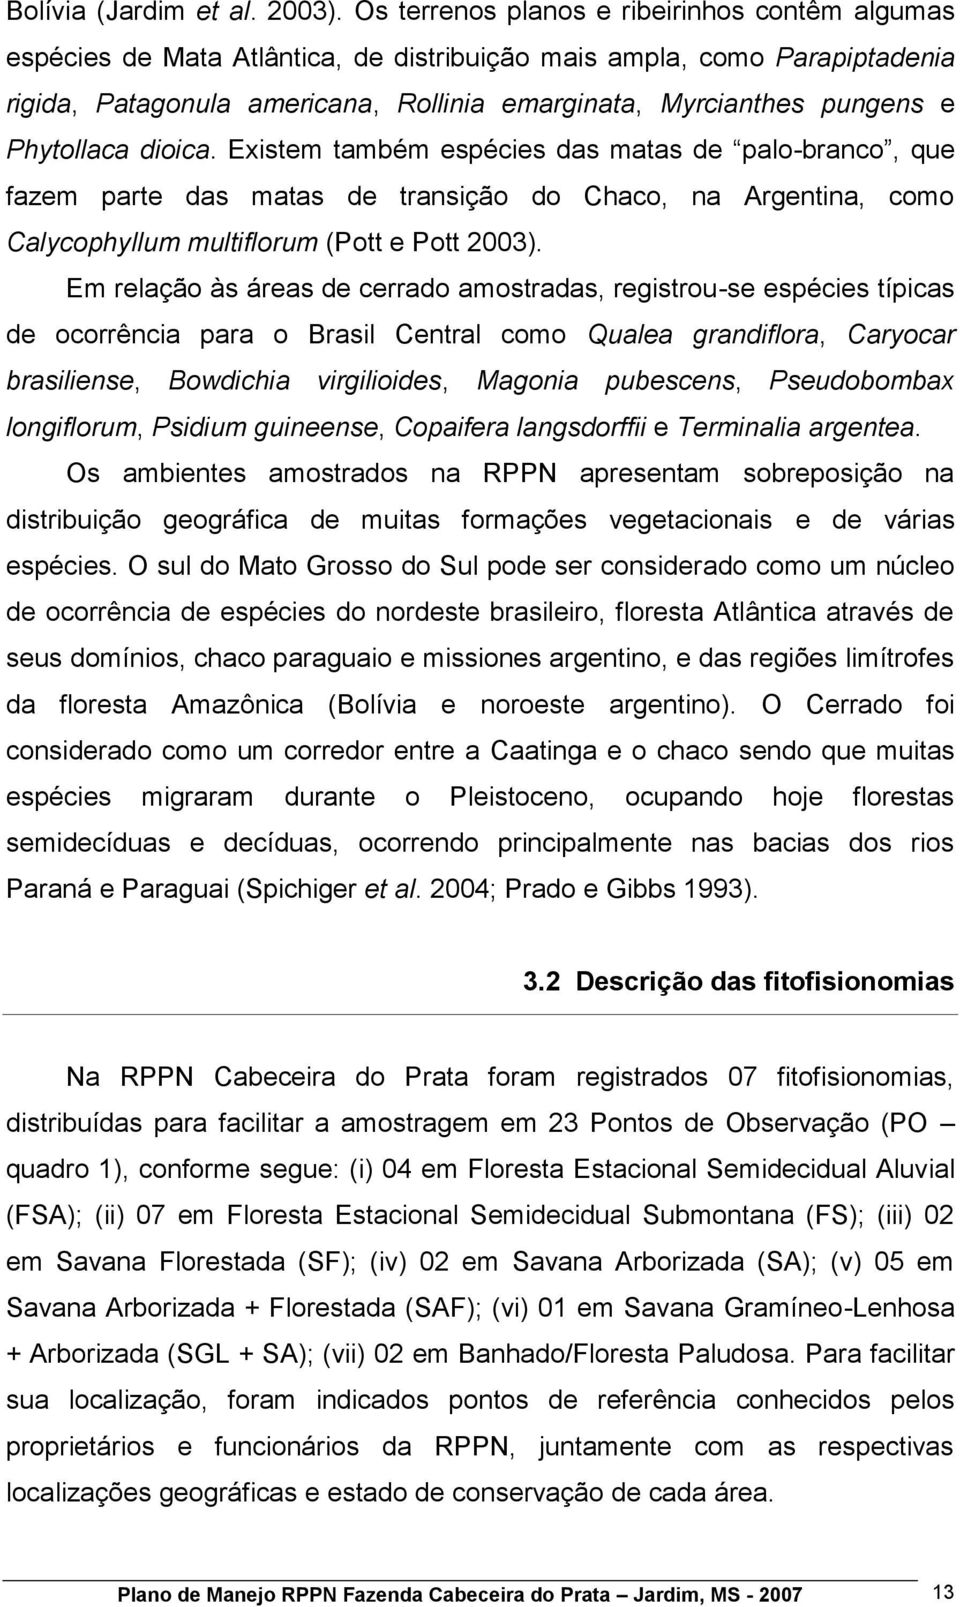 Phytollaca dioica. Existem também espécies das matas de palo-branco, que fazem parte das matas de transição do Chaco, na Argentina, como Calycophyllum multiflorum (Pott e Pott 2003).